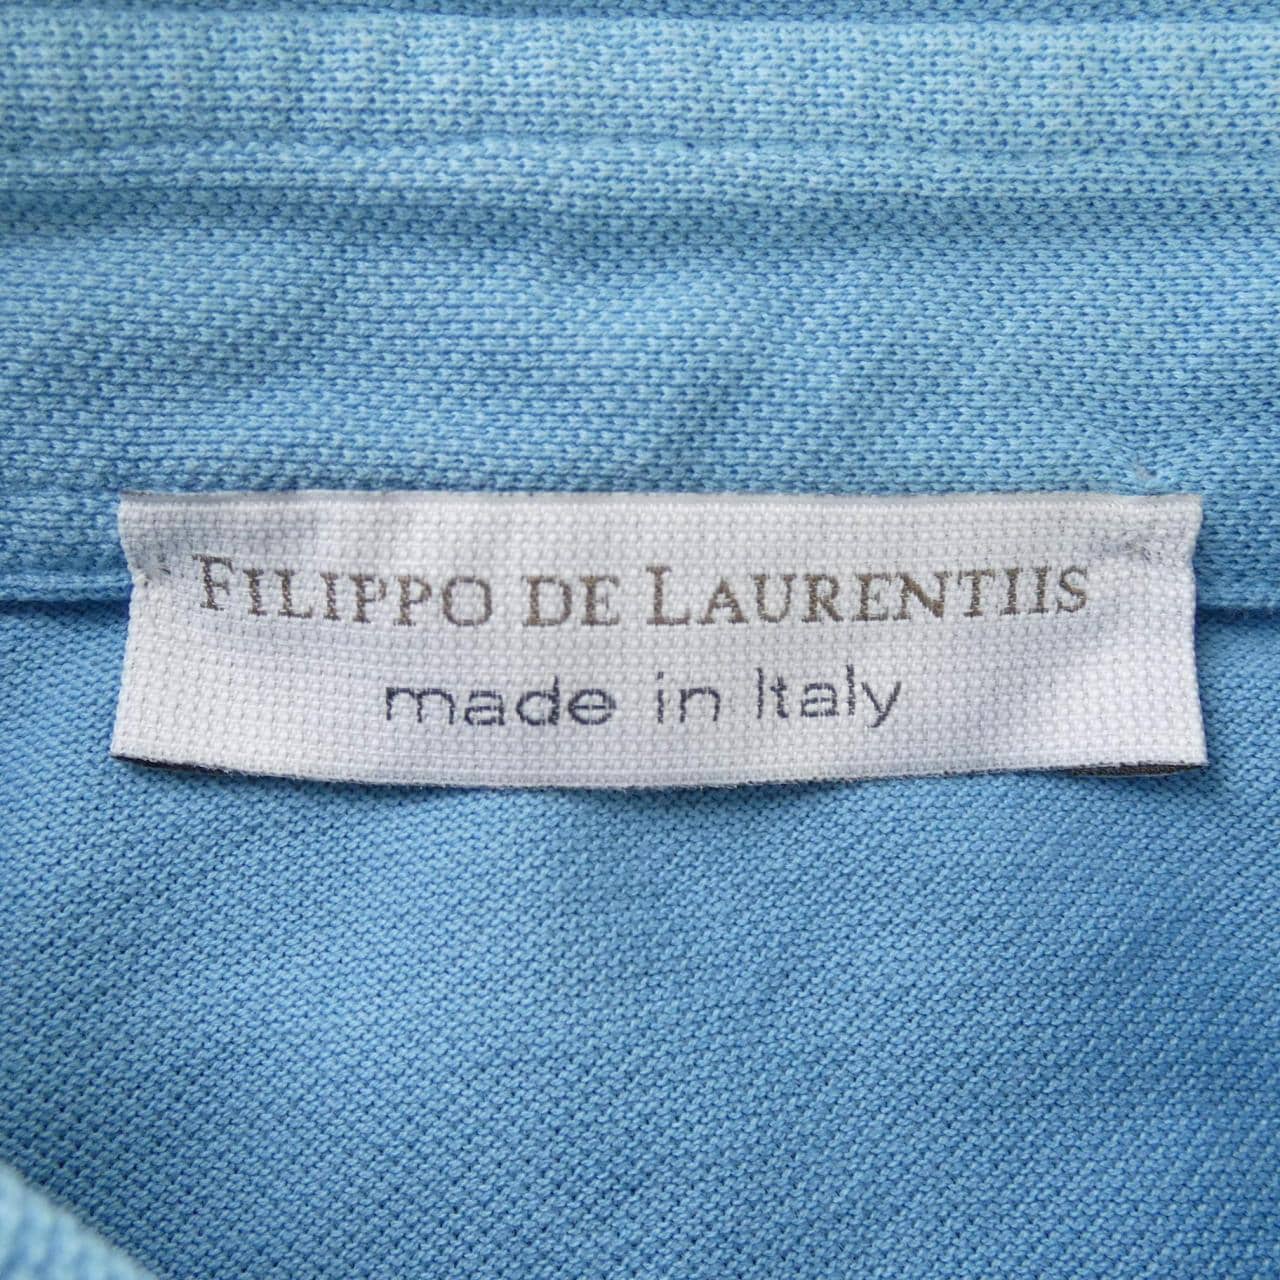 フィリッポデローレンティス FILIPPO DE LAURENTII ポロシャツ